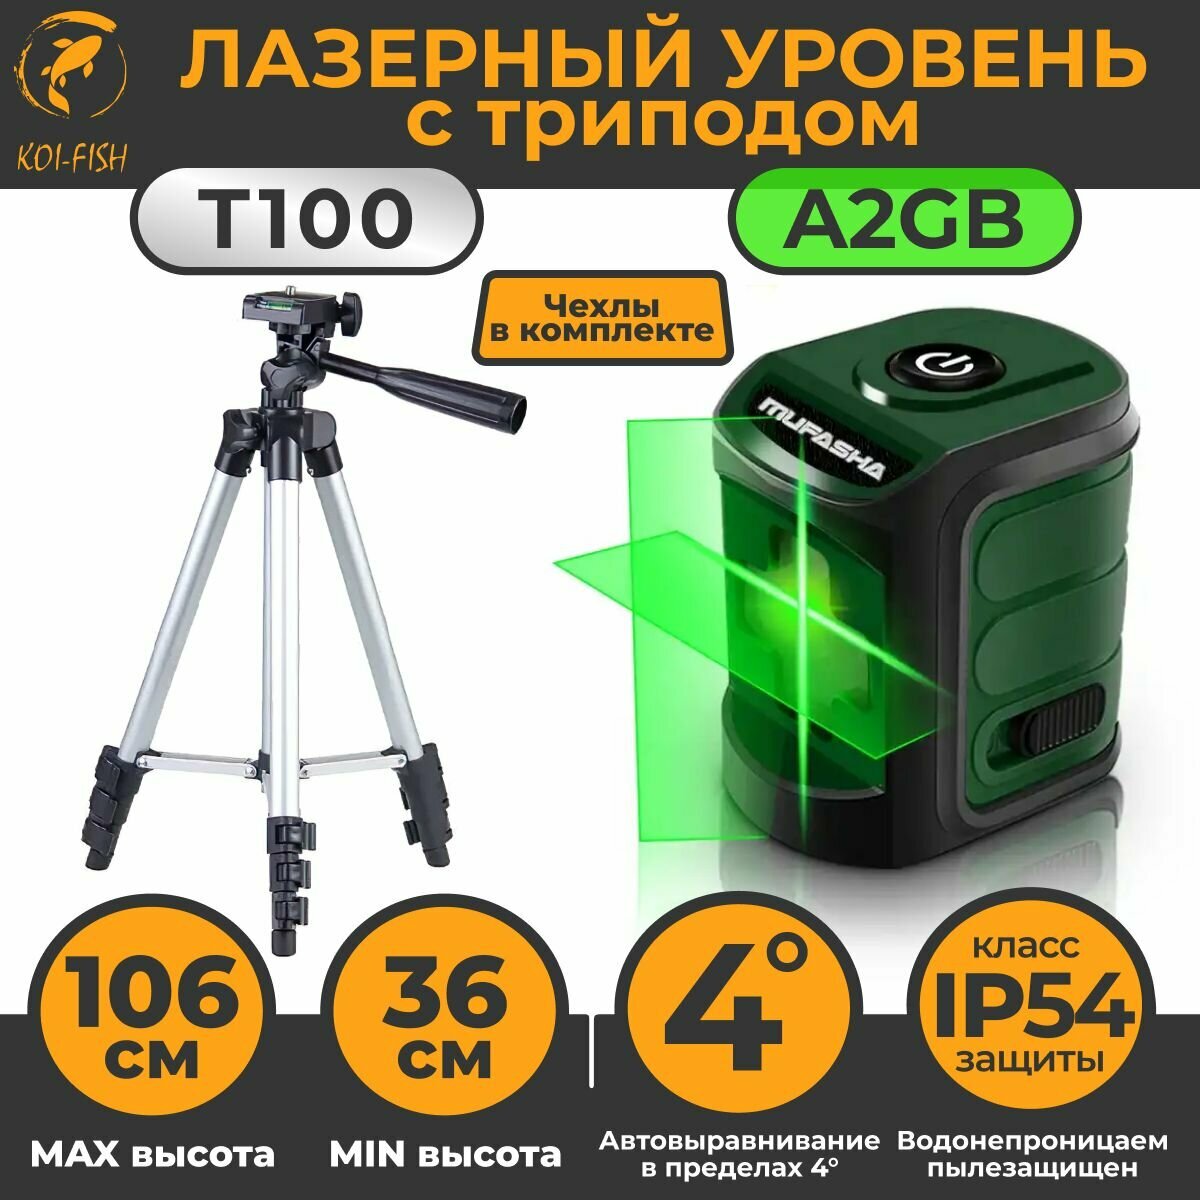 Лазерный уровень с треногой, штативом, нивелир 2 лазерных луча (A2GB зеленый+T100_серый))